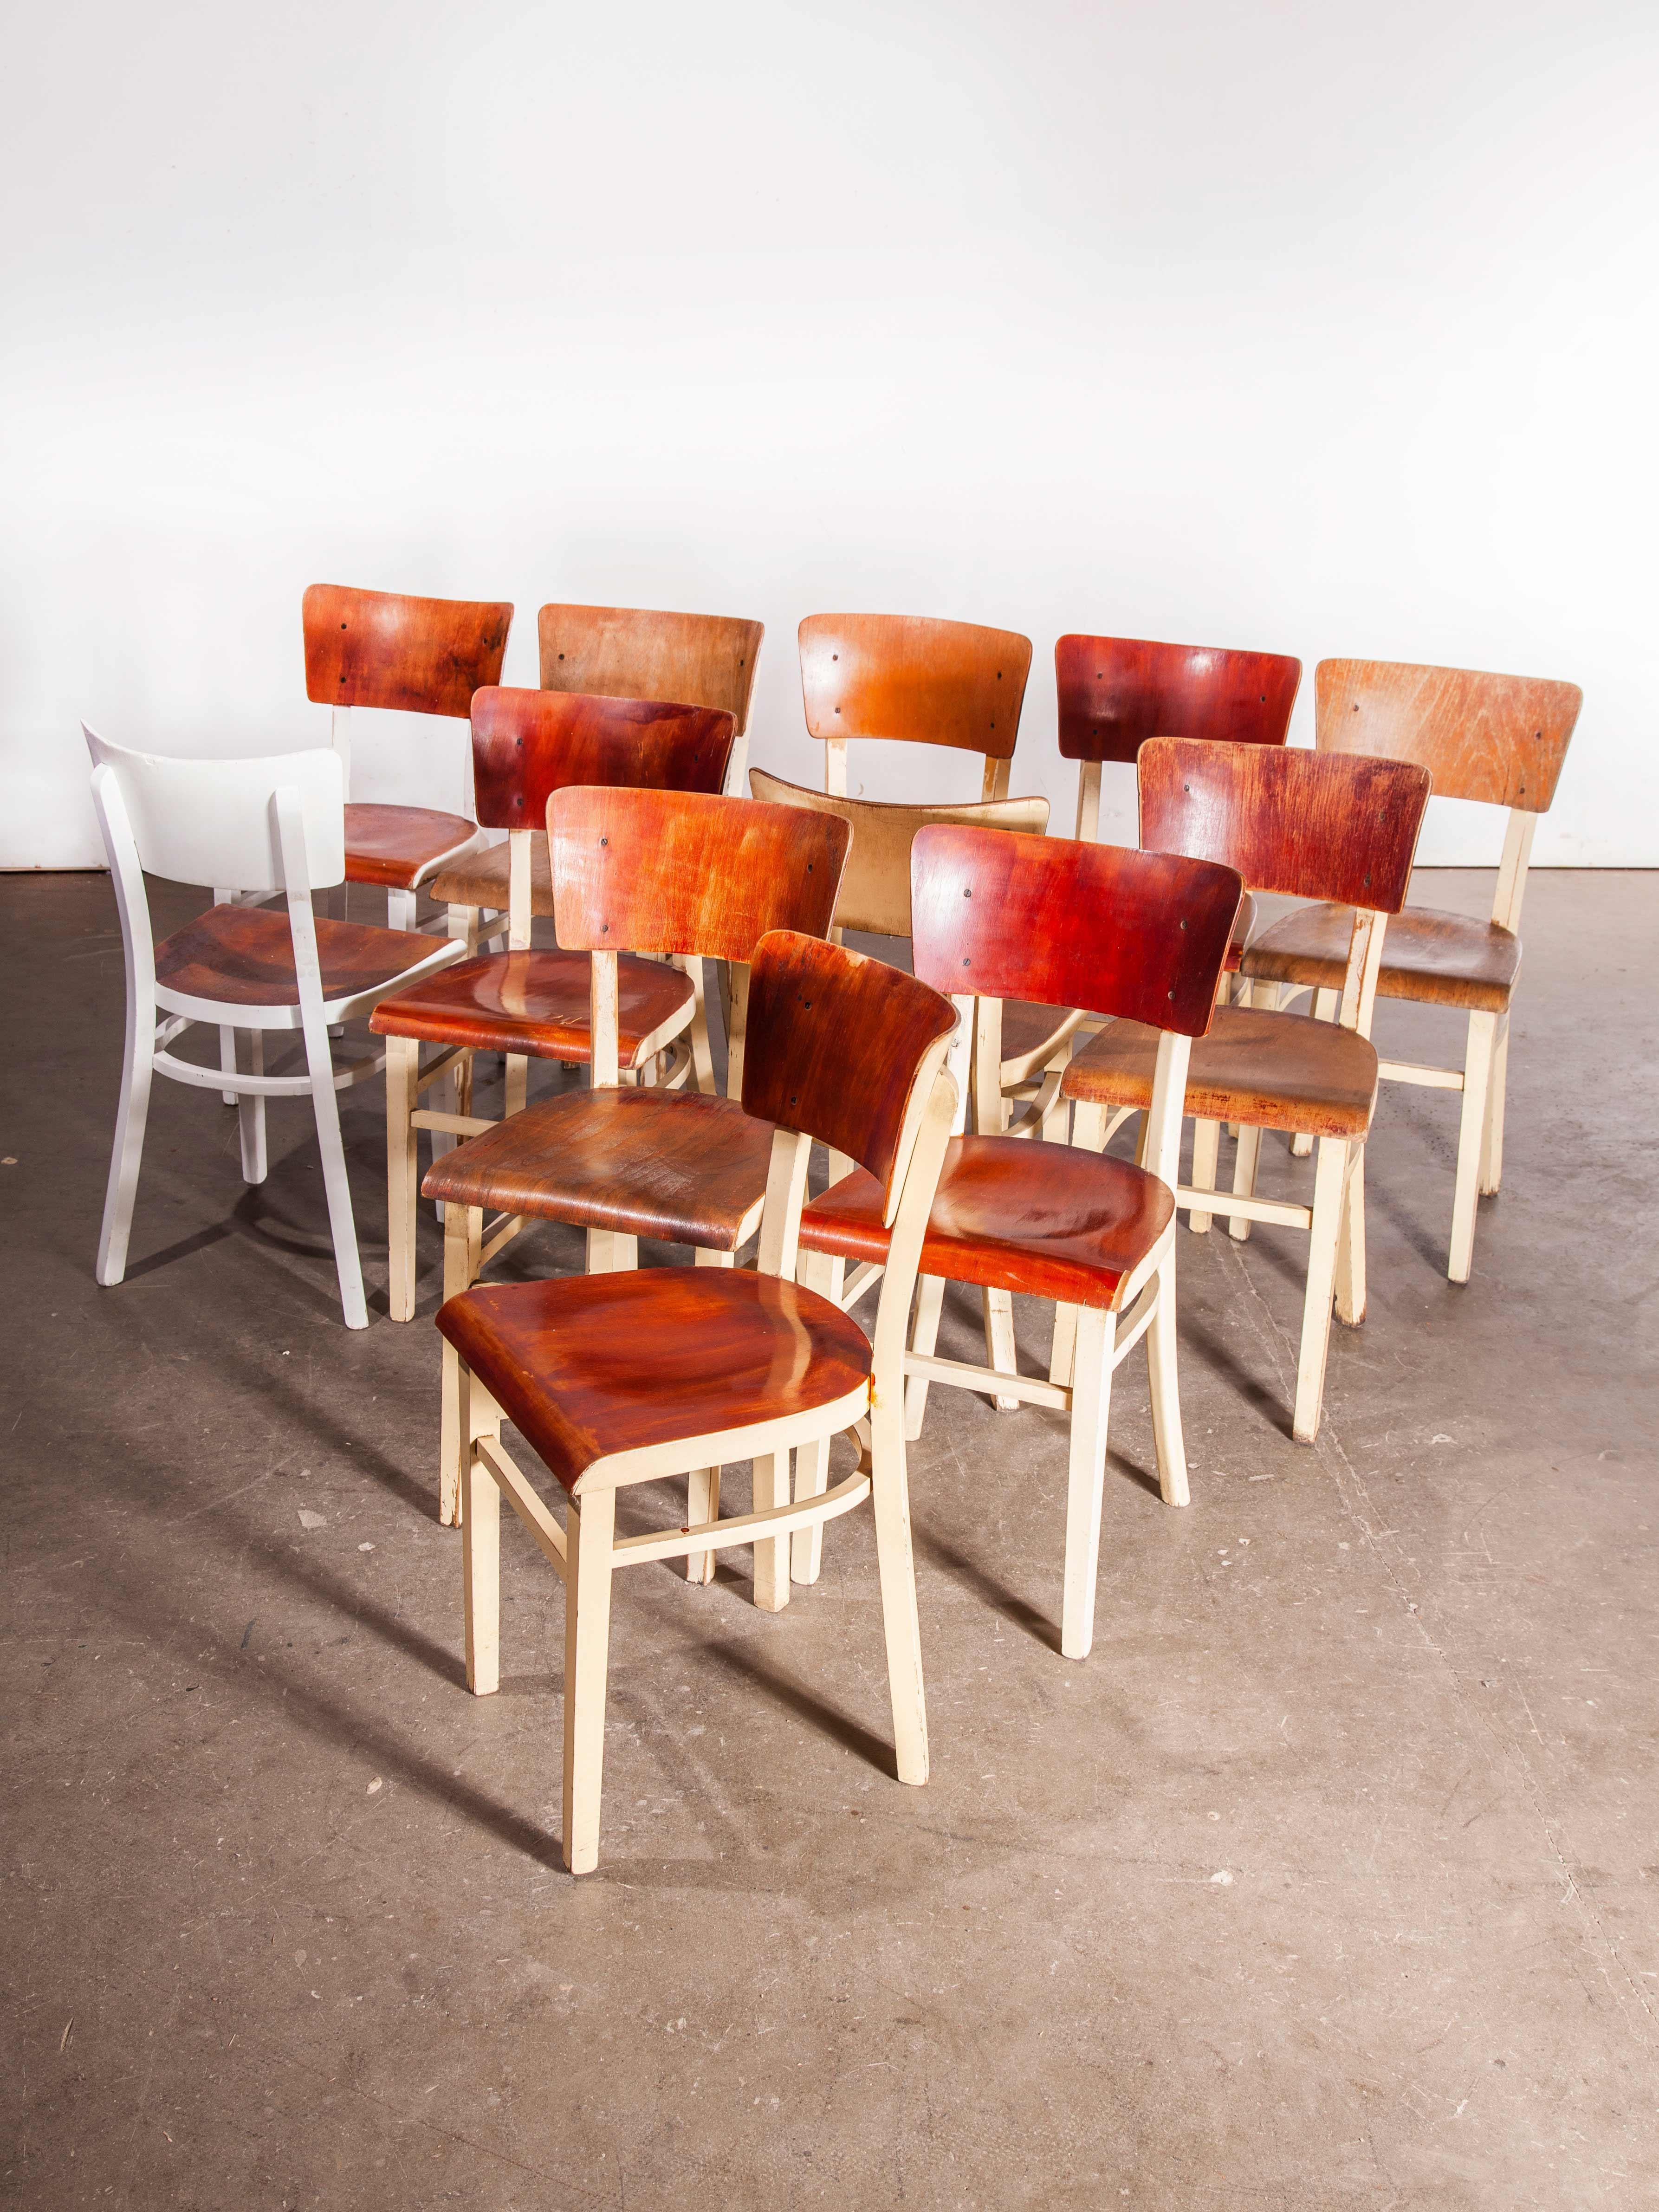 1950s Chaise de salle à manger classique et élégante en bois courbé peint par Thon - ensemble de douze - autres quantités disponibles
chaise de salle à manger classique et élégante en bois courbé des années 1950 par Thon - ensemble de douze -